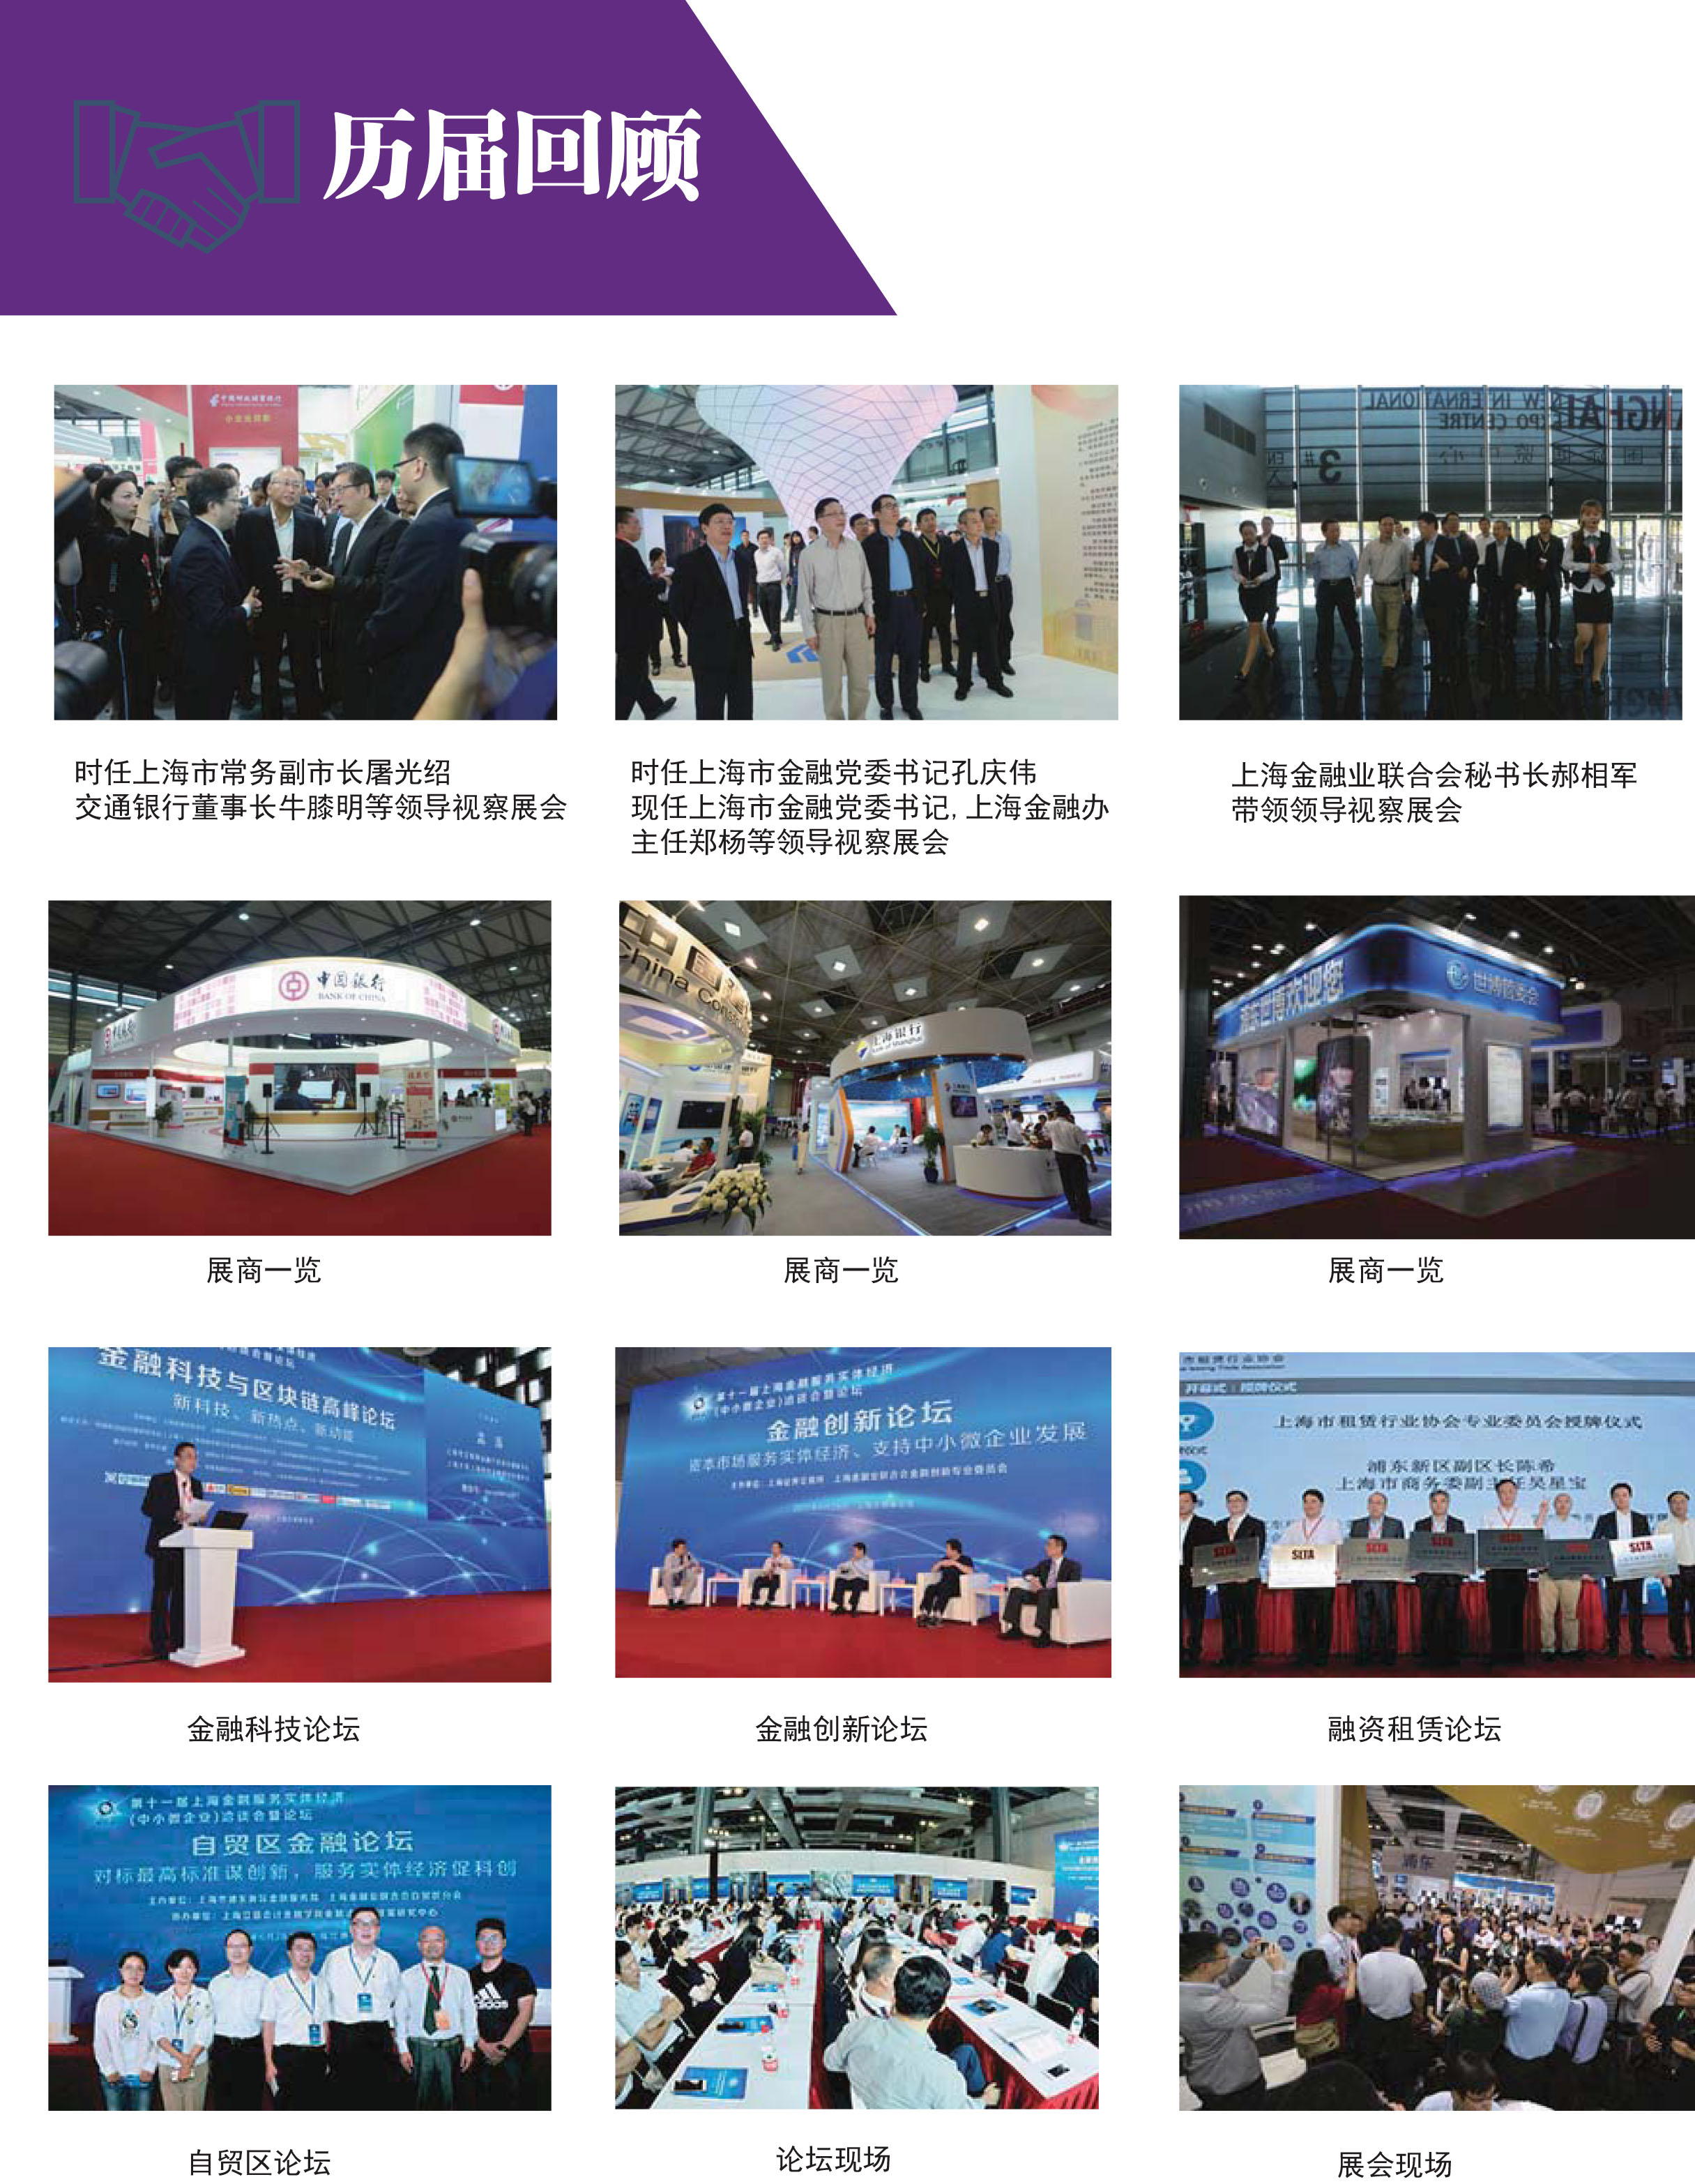 2018第十二届上海金洽会暨第二届上海金融信息安全高峰论坛